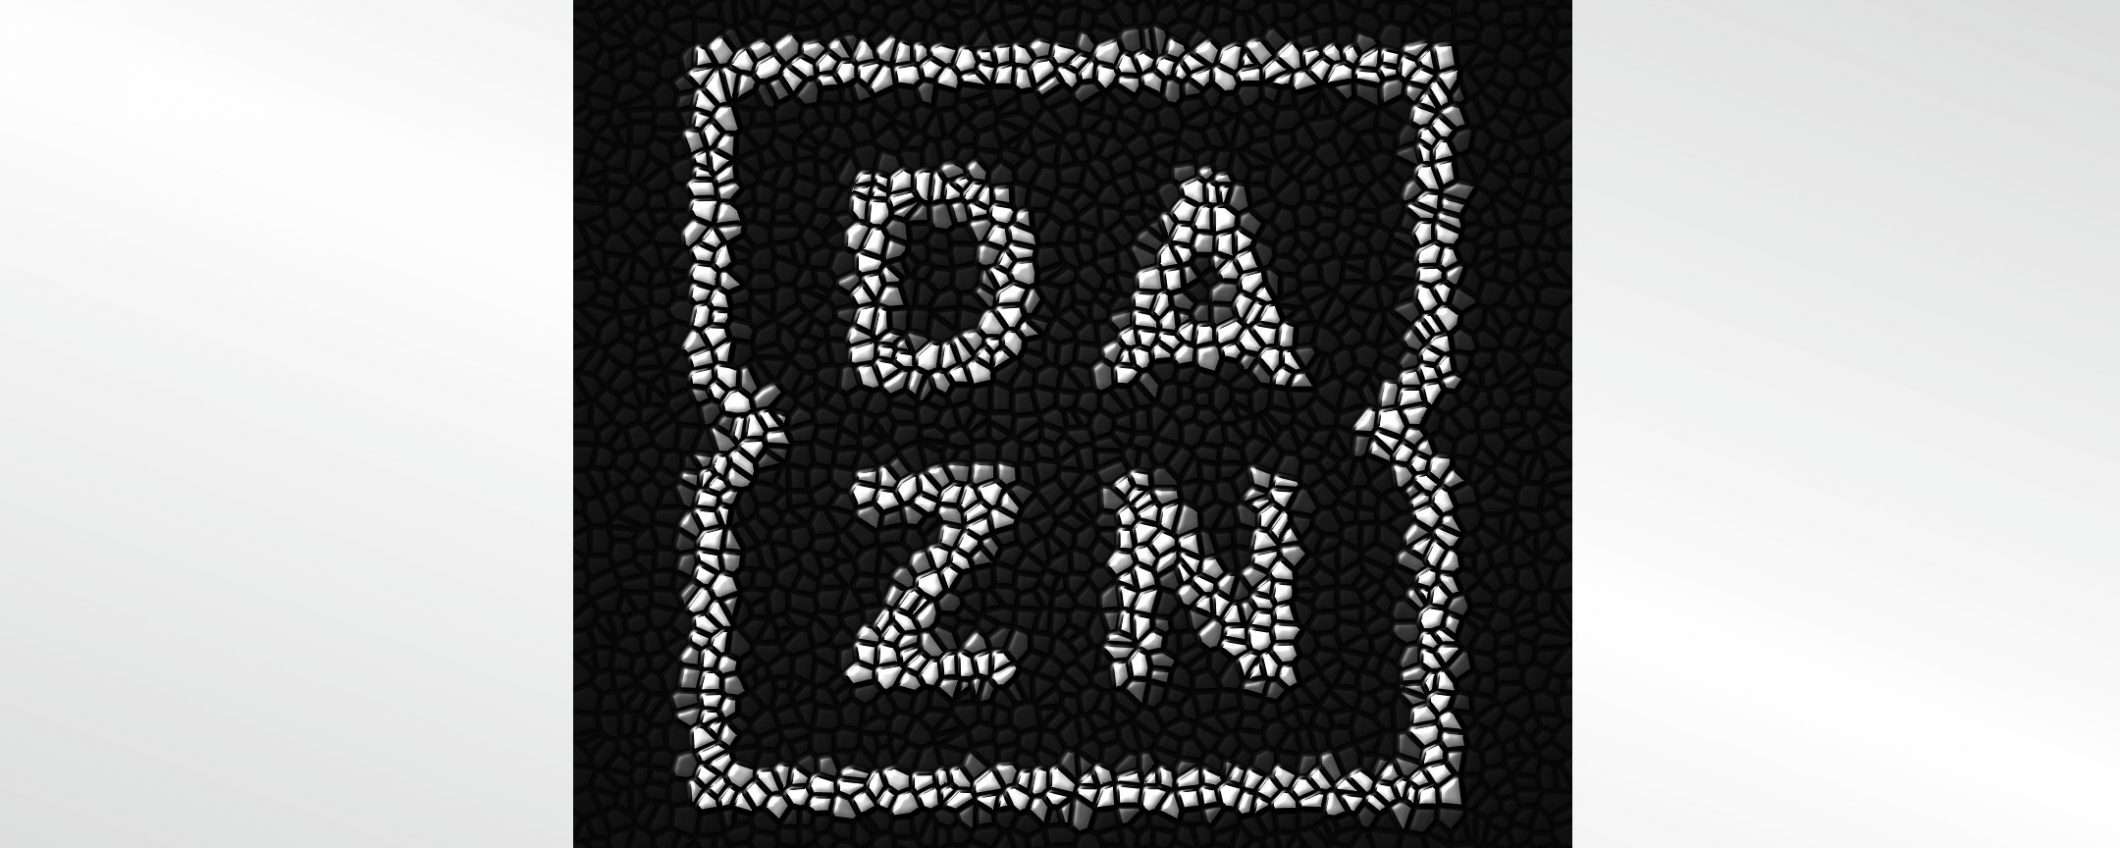 DAZN sarà Full HD a partire dal 20 novembre